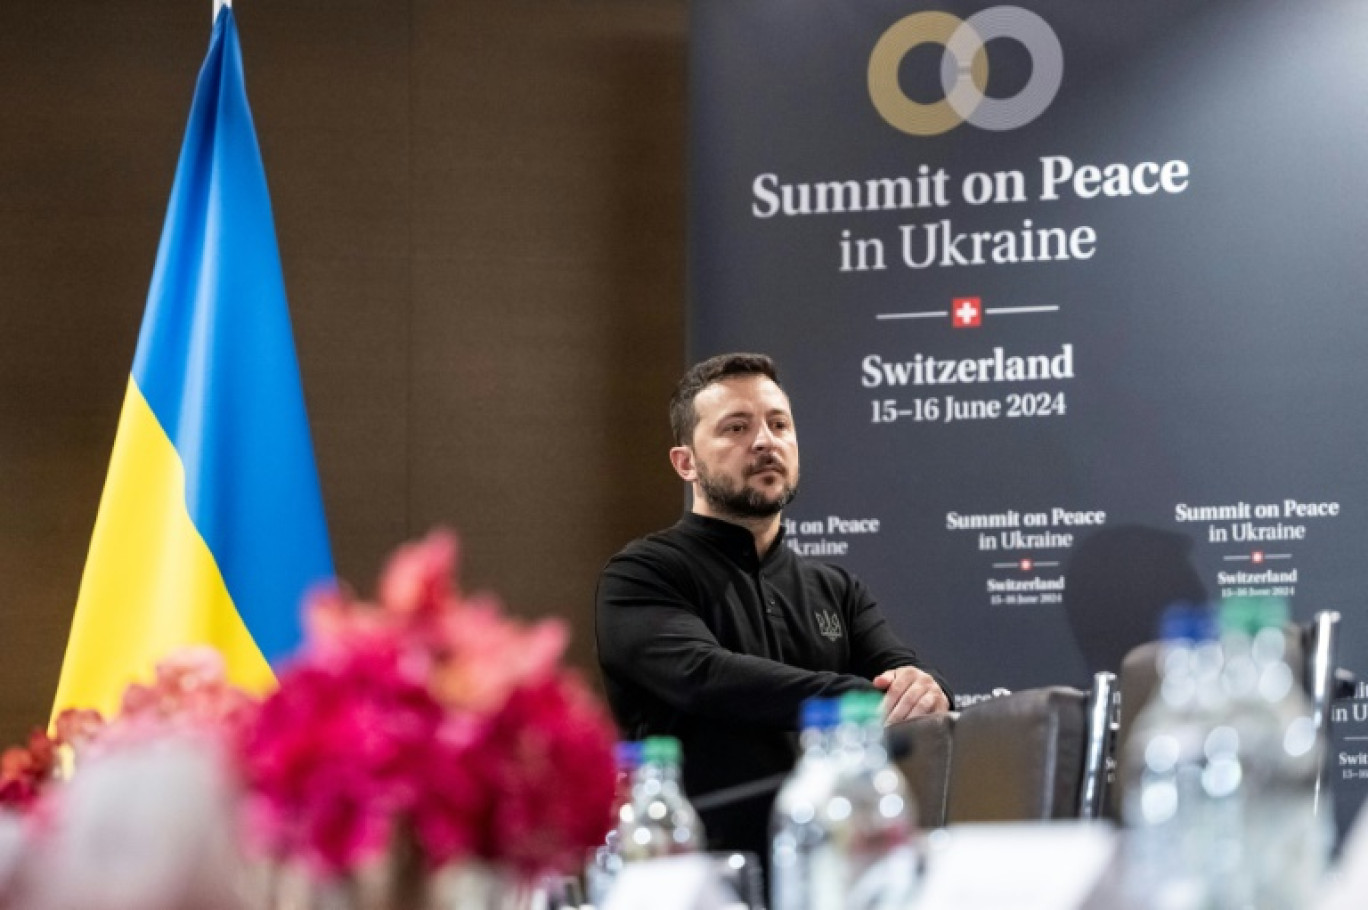 Le président ukrainien Volodymyr Zelensky lors d'un discours retransmis sur écrans au Sommet pour la paix en Ukraine, le 15 juin 2024 à Burgenstock, près de Lucerne, en Suisse © URS FLUEELER